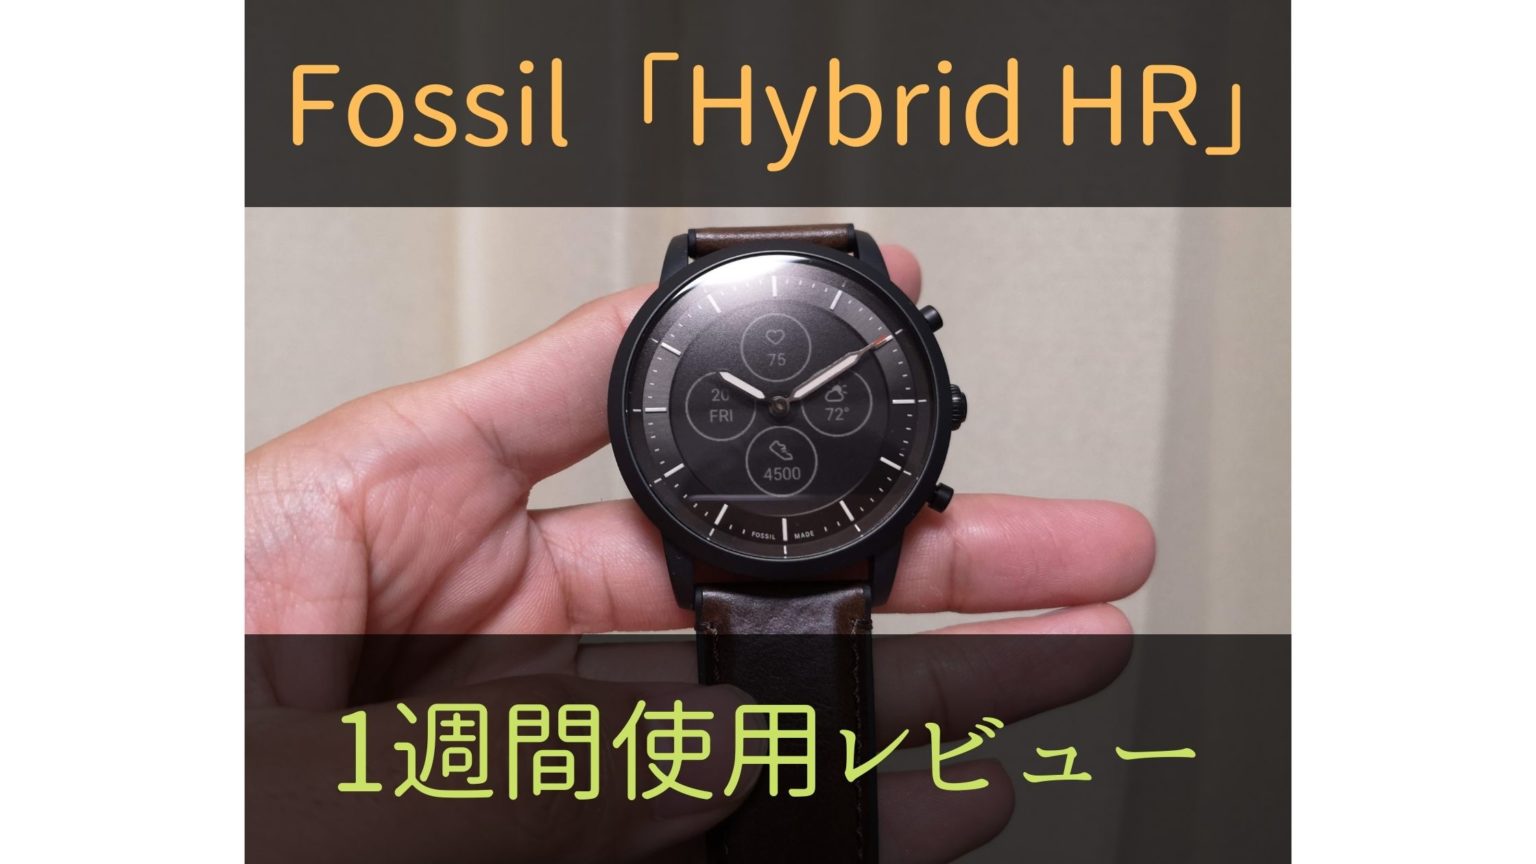 アナログの文字盤を備えたFossilのスマートウォッチ「Hybrid HR」を 